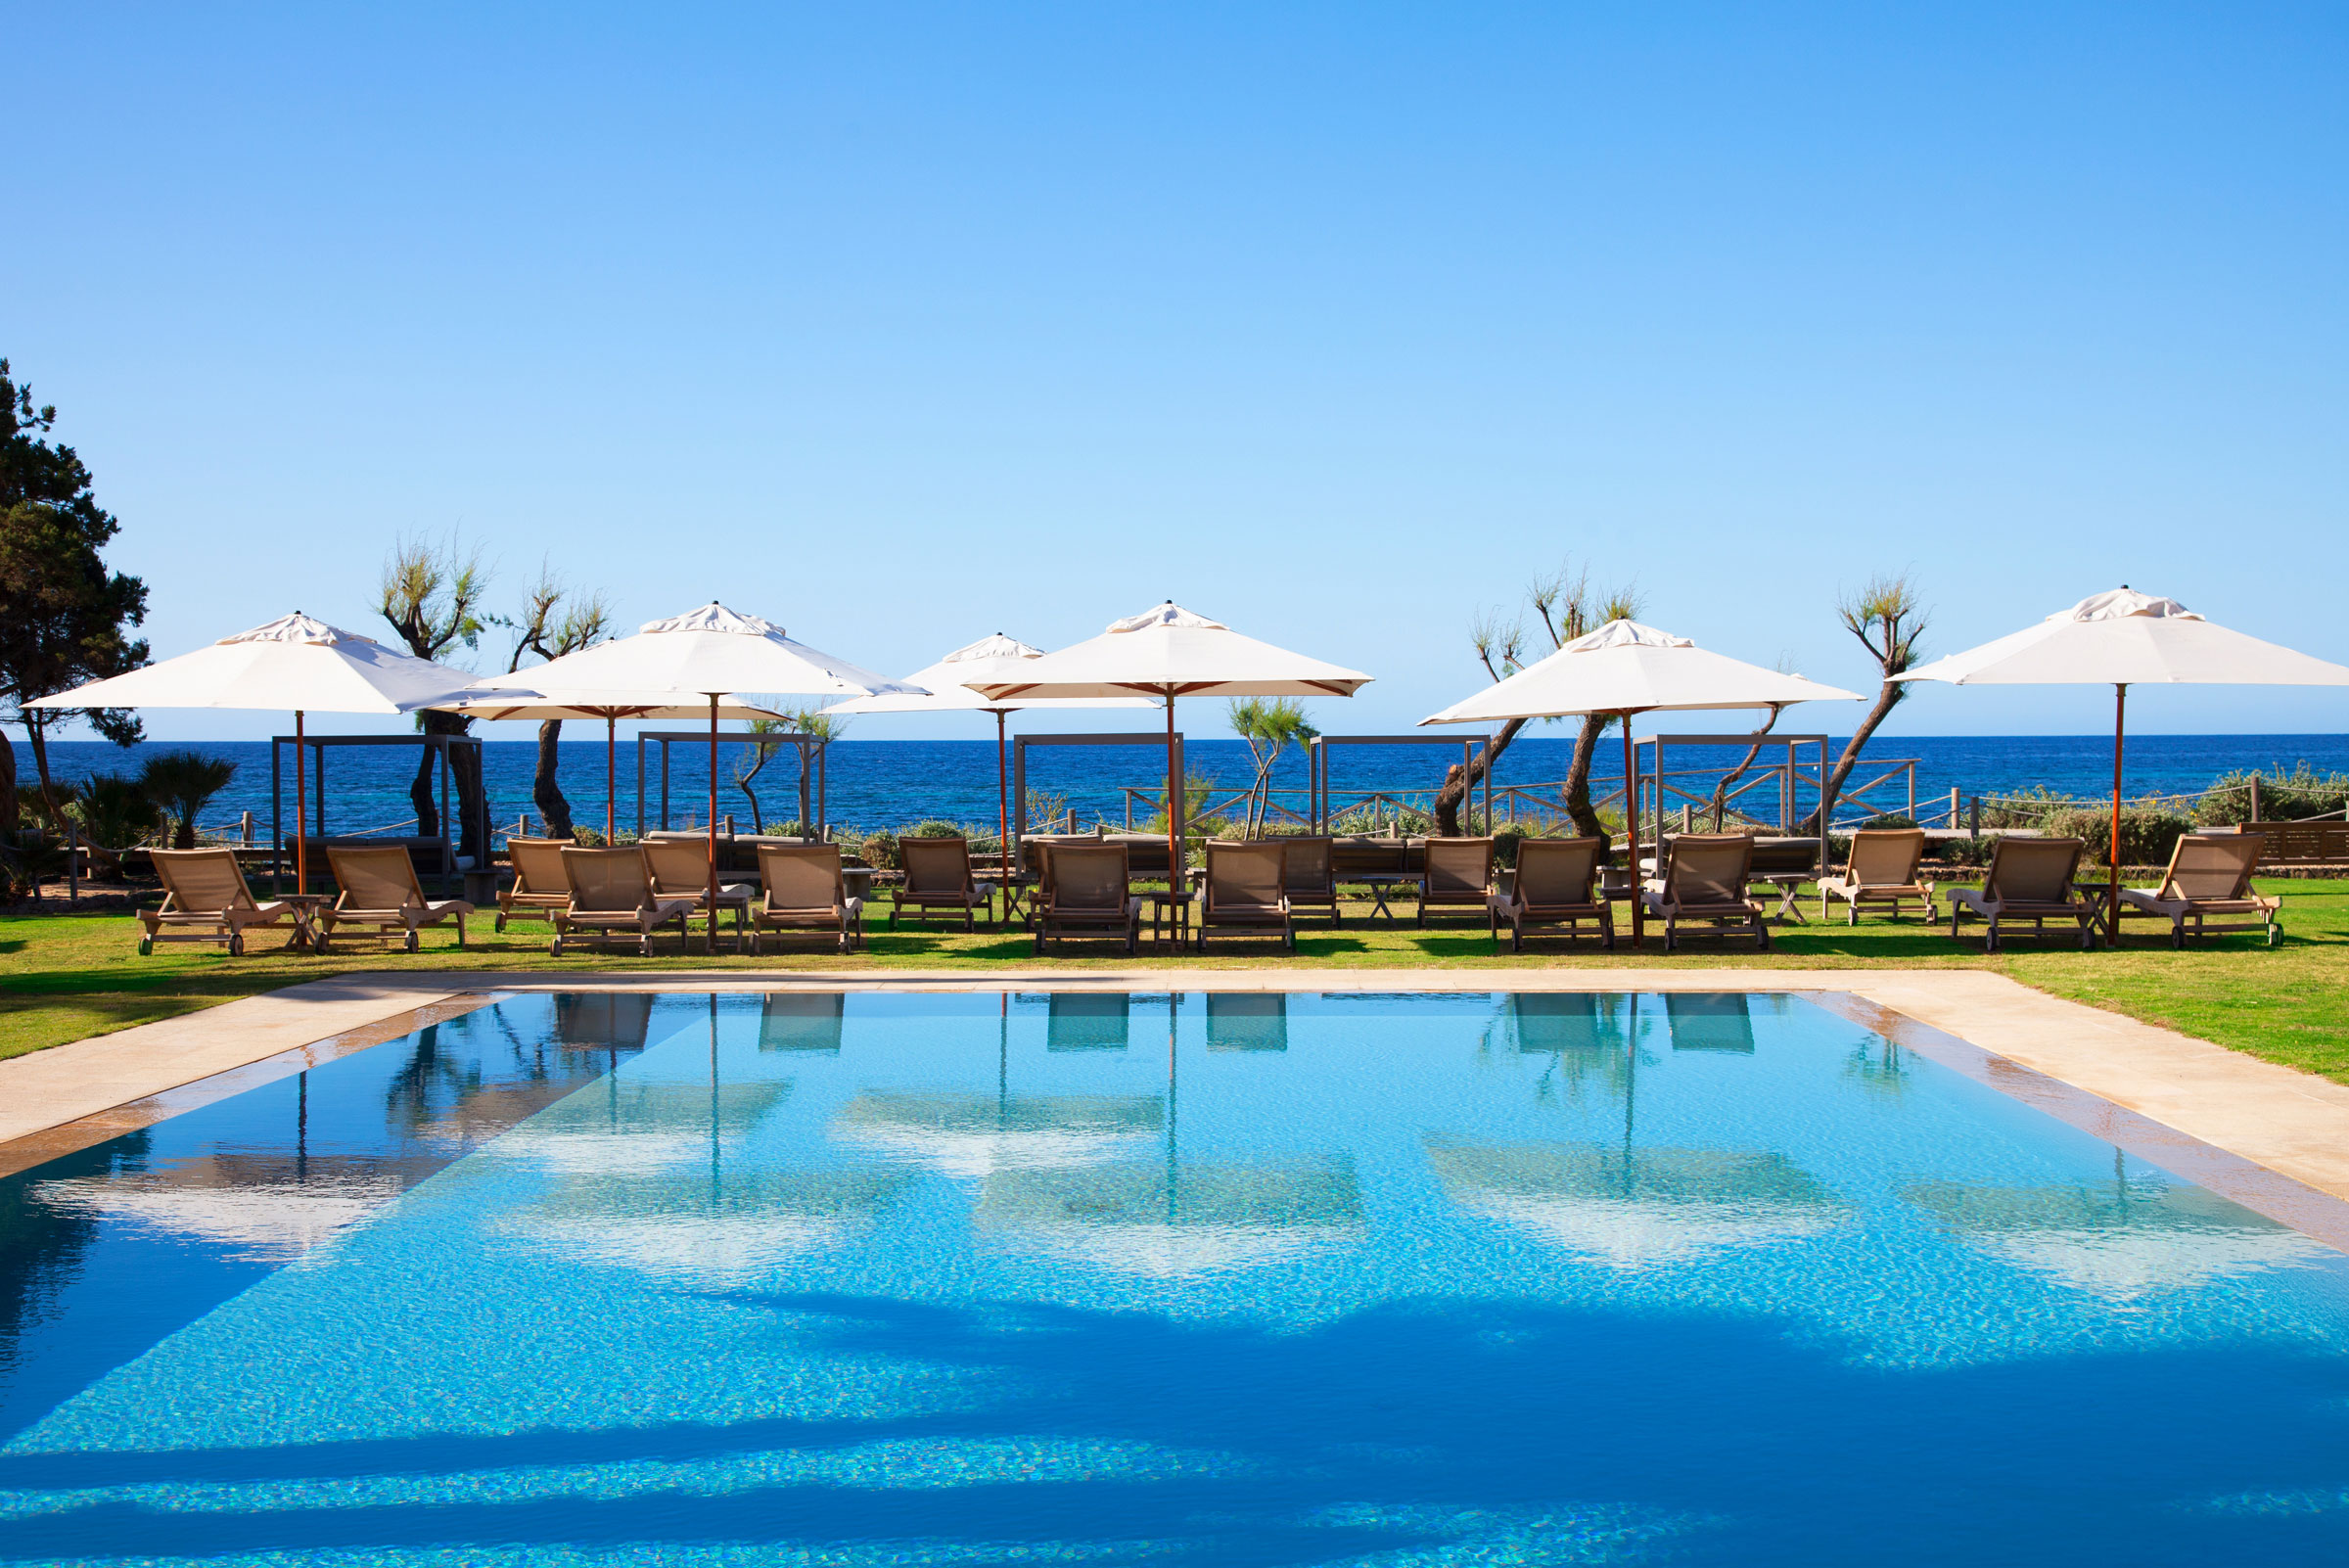 Le Gecko Hotel de Formentera veut conjuguer luxe et développement durable